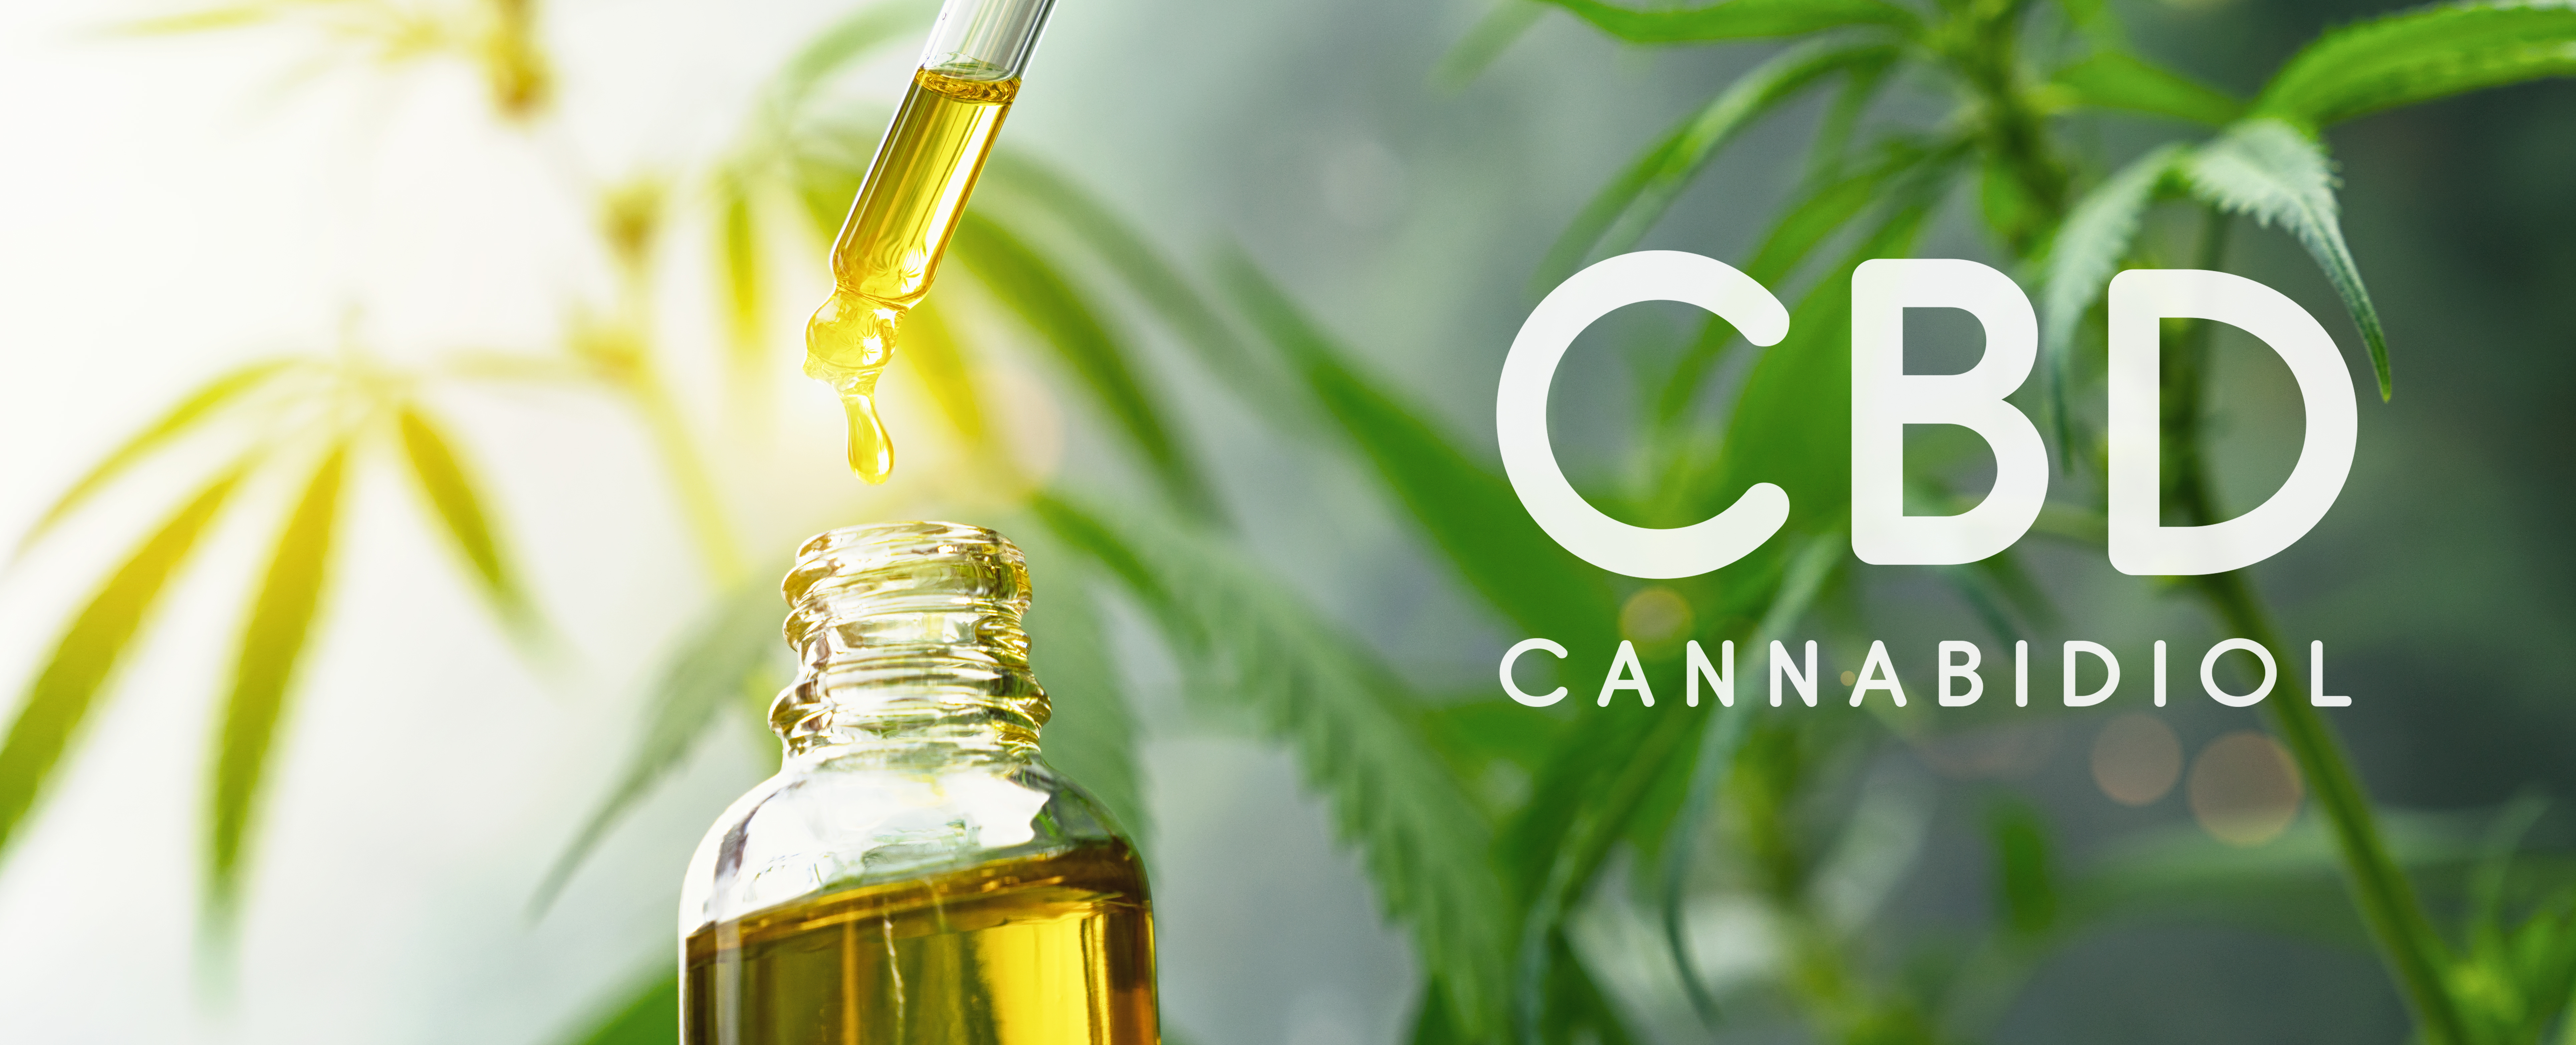 CBD Oil Cannabinoid from the Cannabis Plant